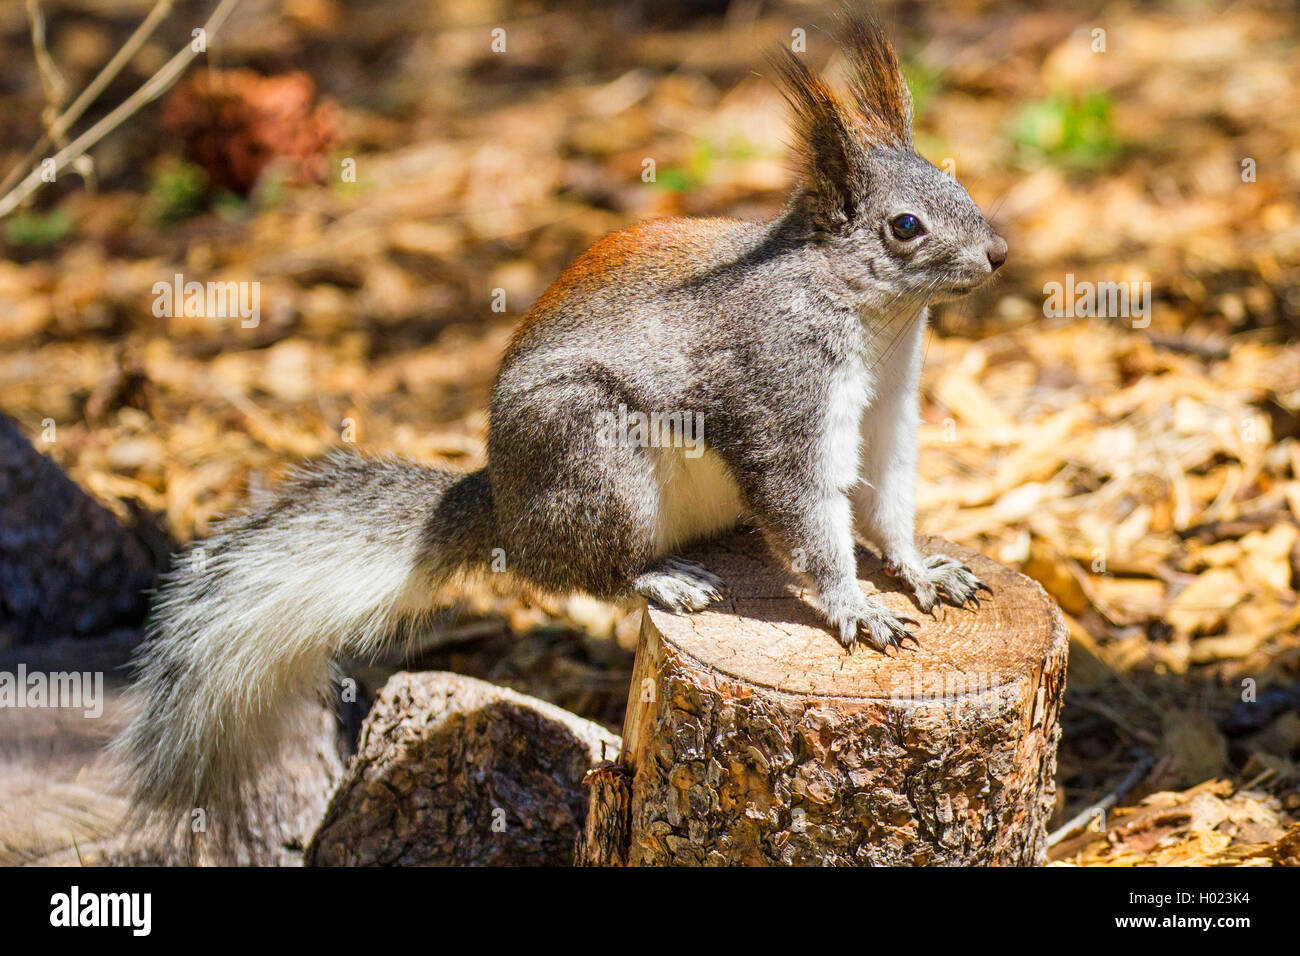 Tassle-eared, Abert die Eichhörnchen (Sciurus aberti), sitzt auf einem Baum Baumstumpf, USA, Arizona, Flagstaff Stockfoto